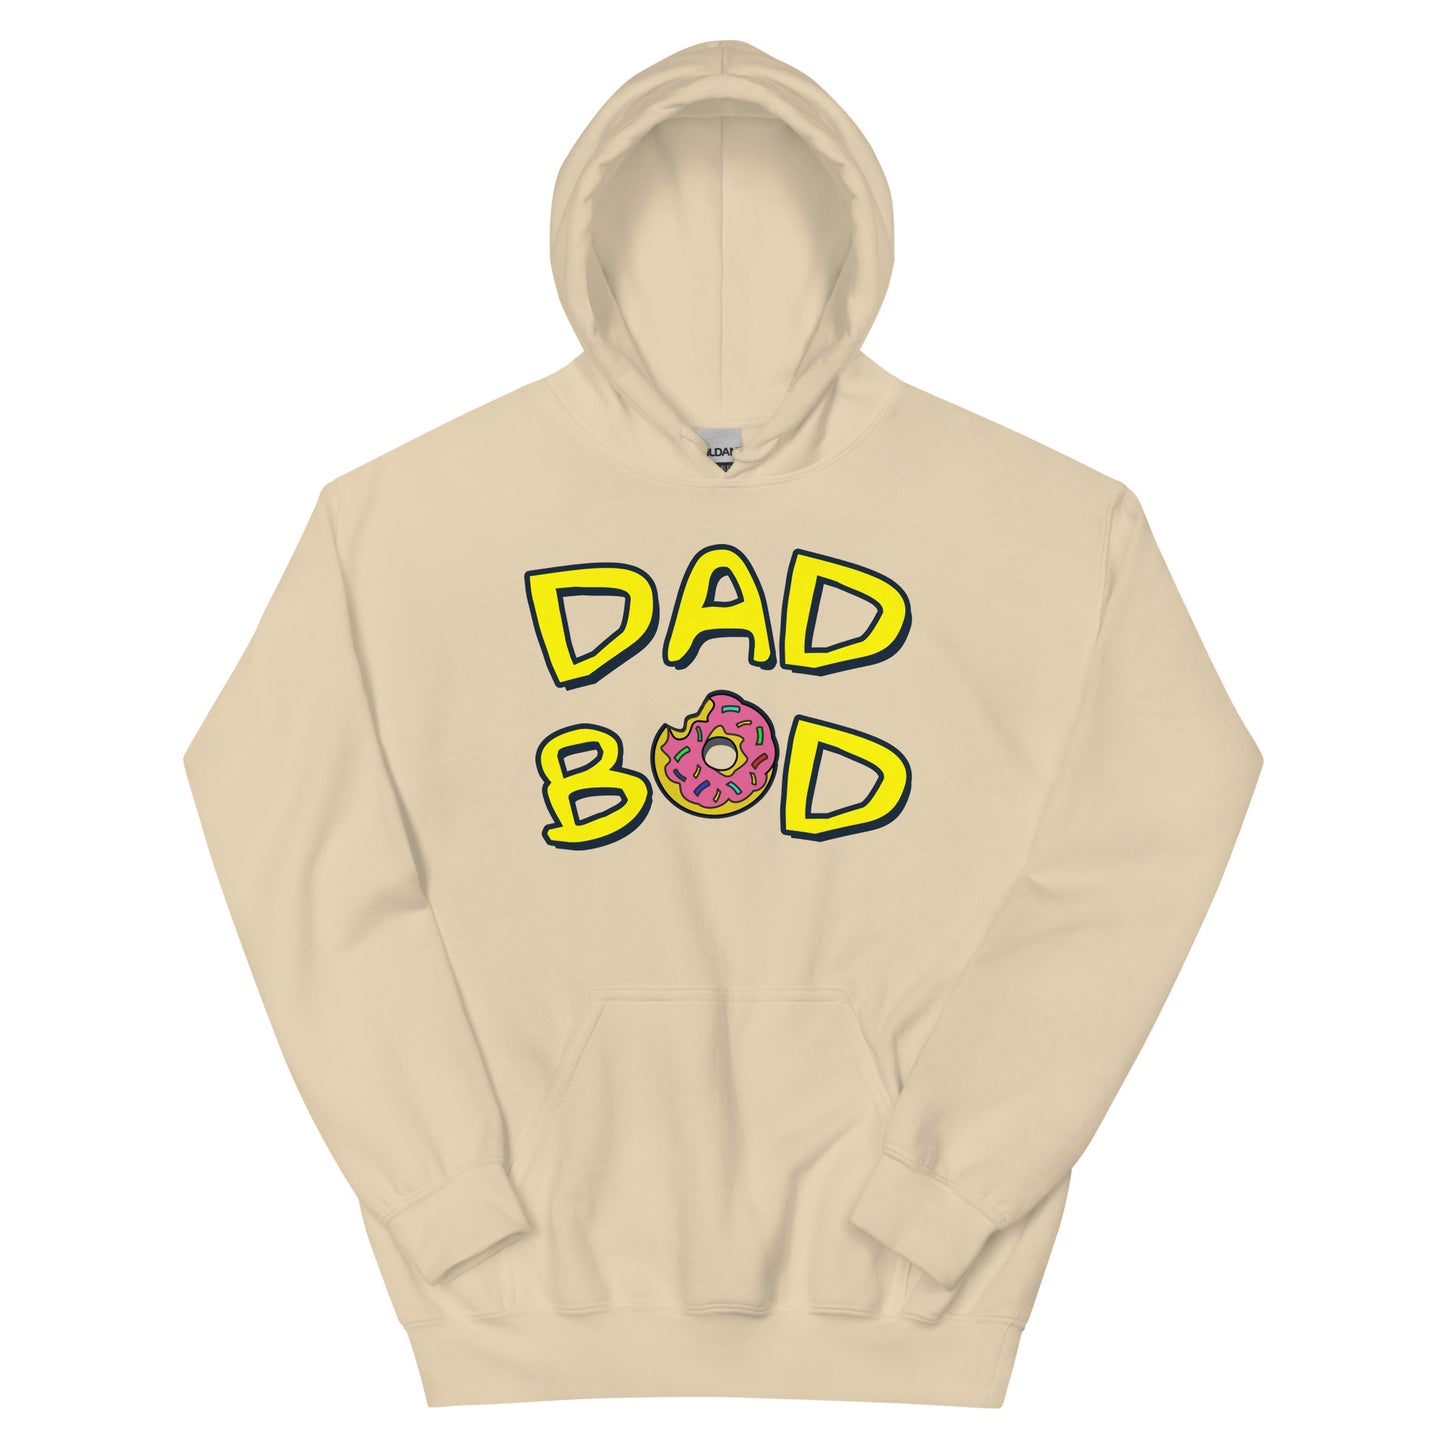 "Dad Bod" - Hoodie